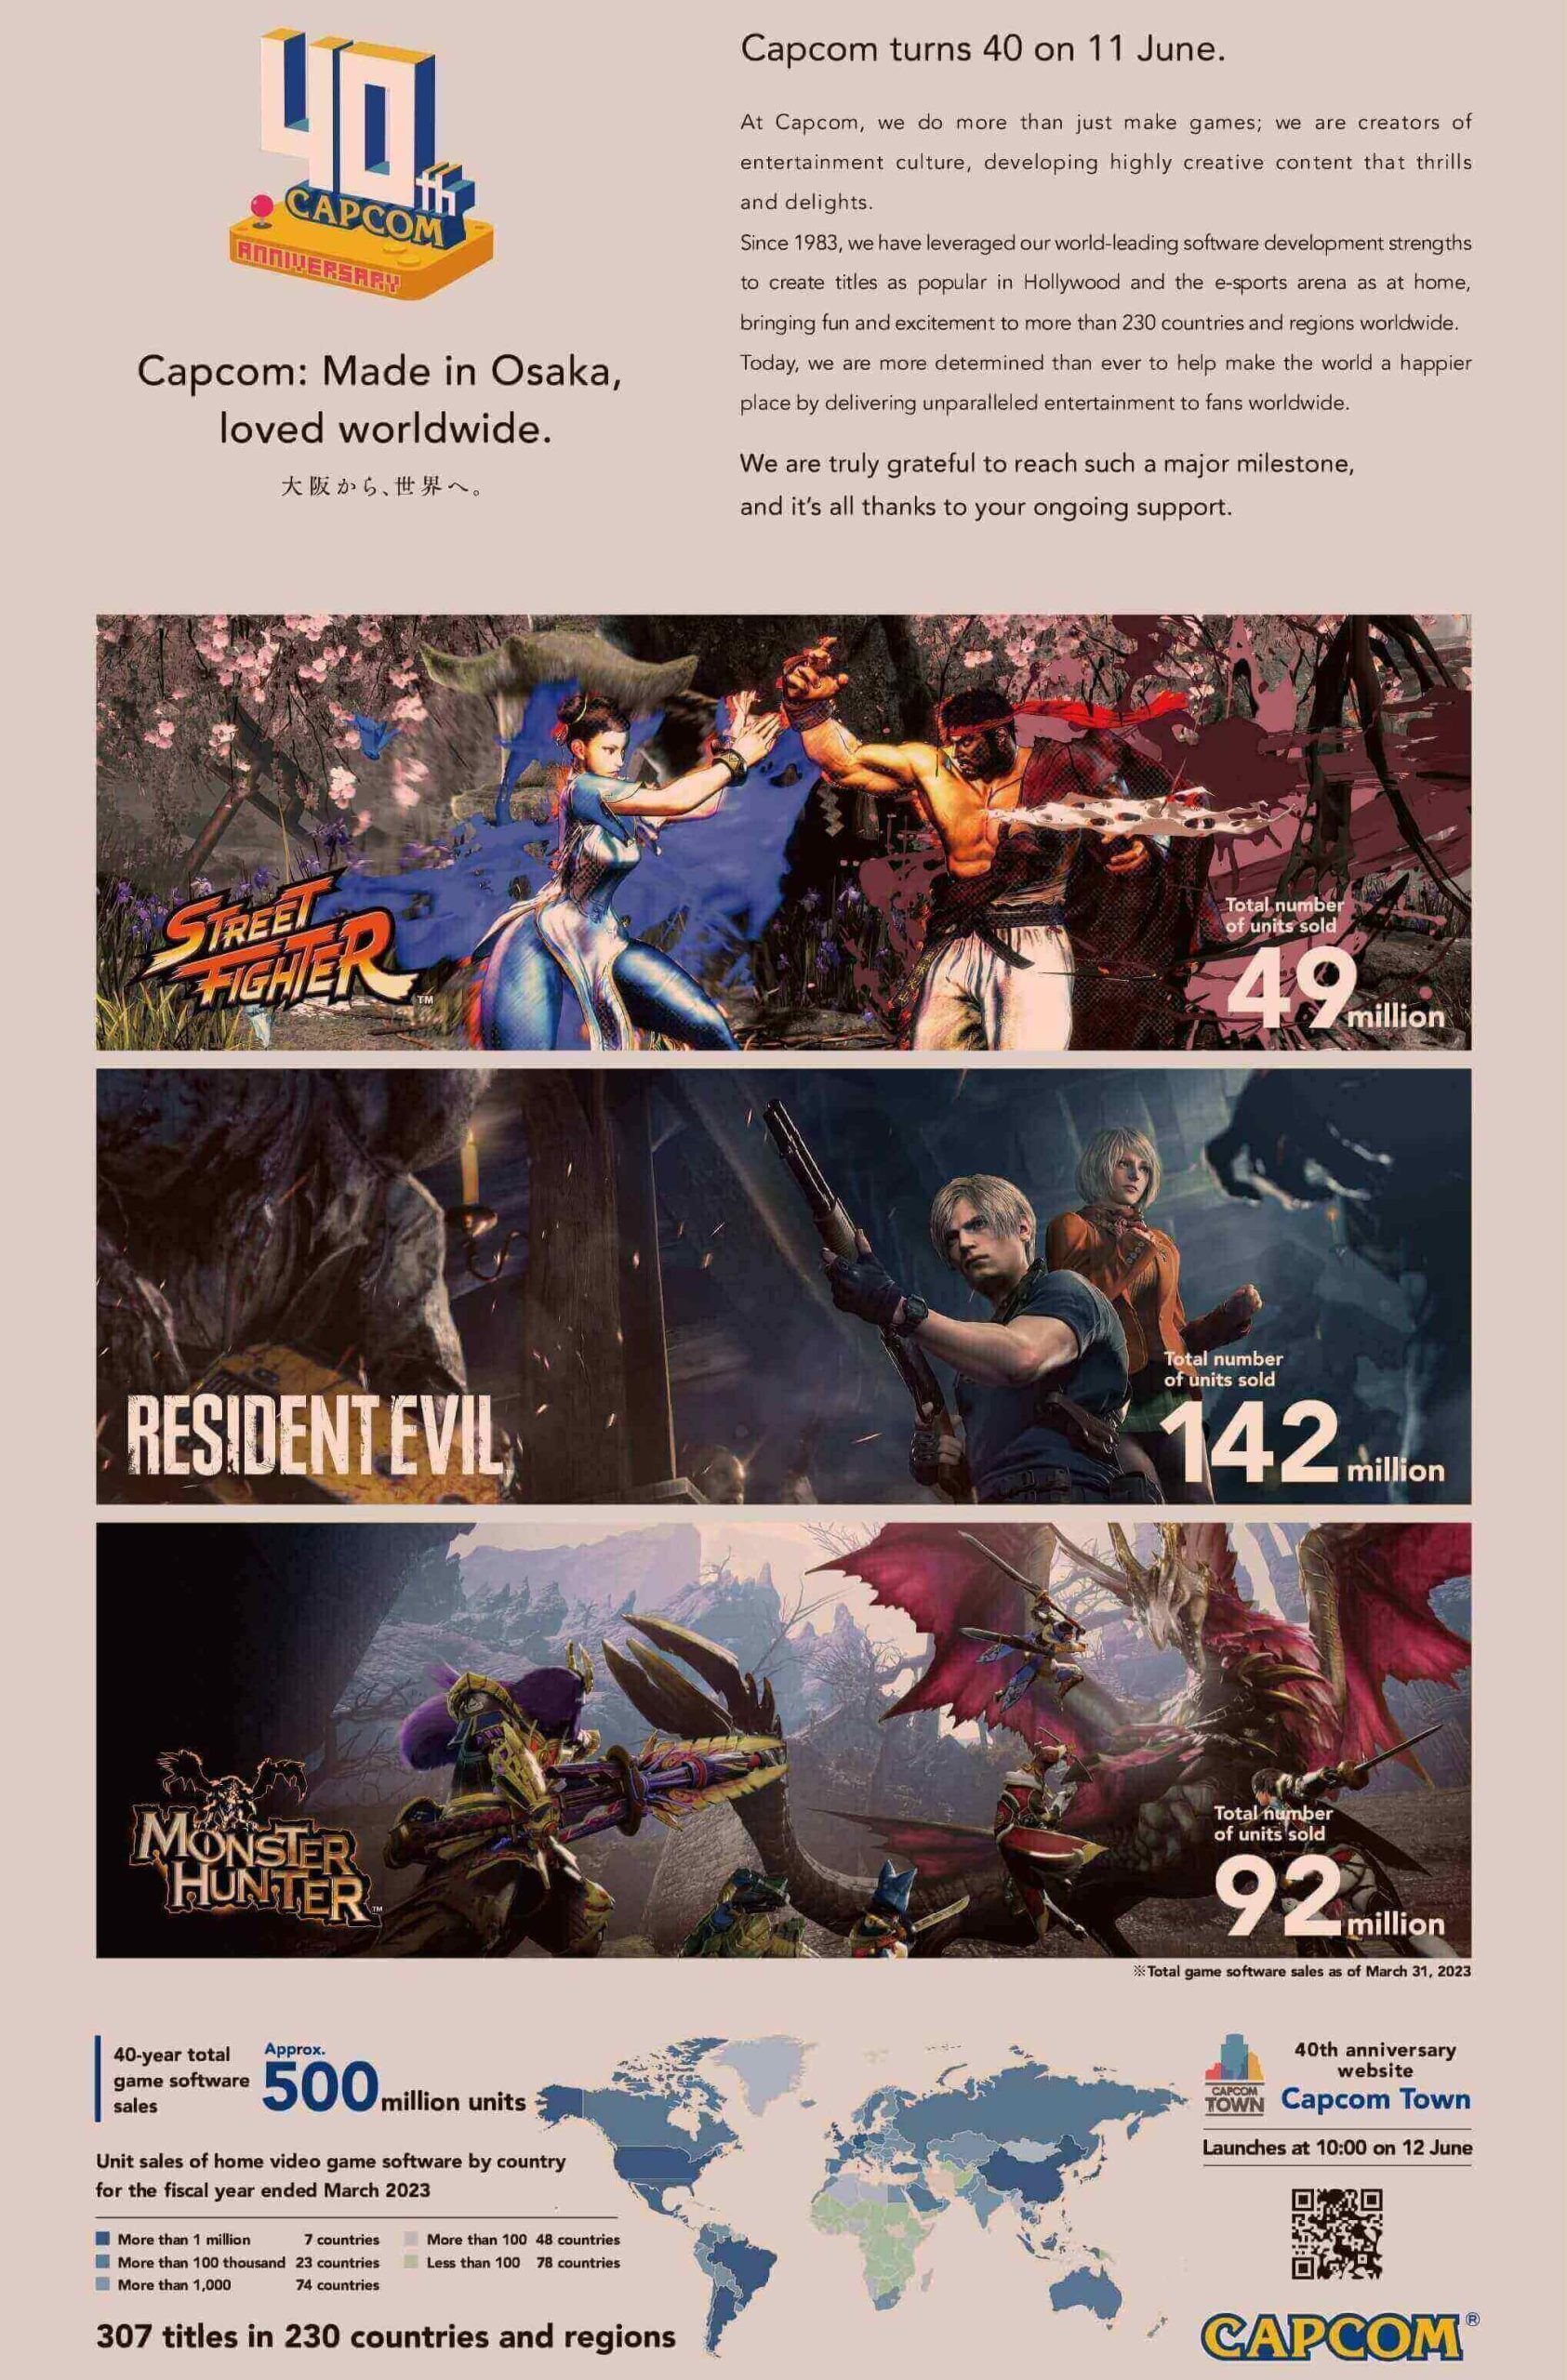 Capcom company advertisement